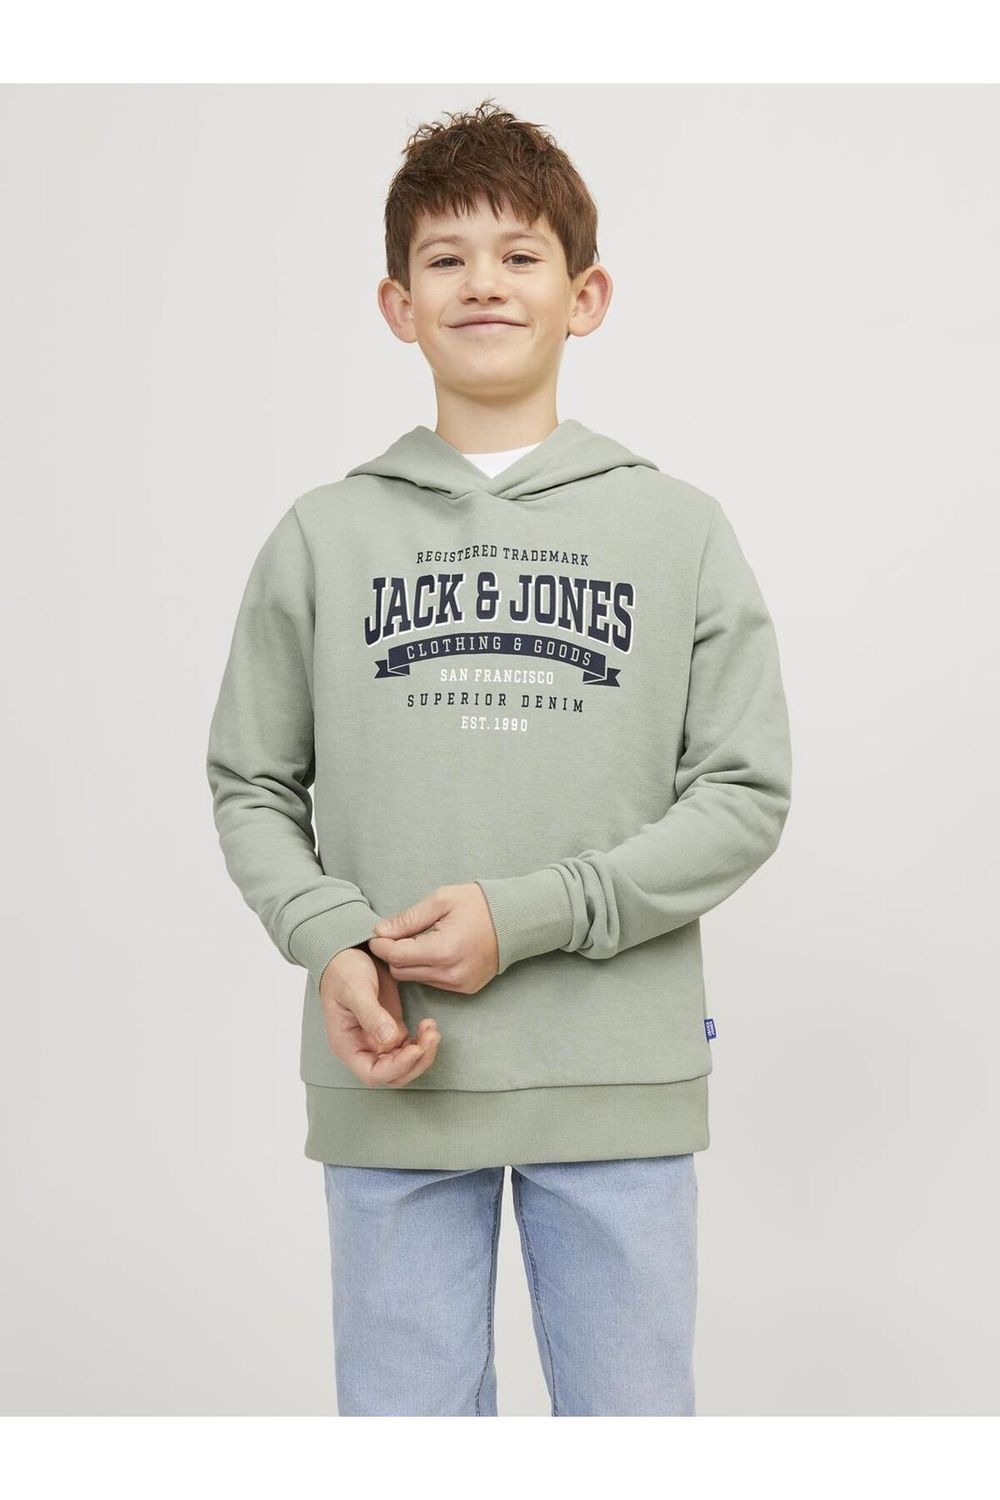 - & Regular - Jack Jones Grün Pullover Fit Junior Trendyol -